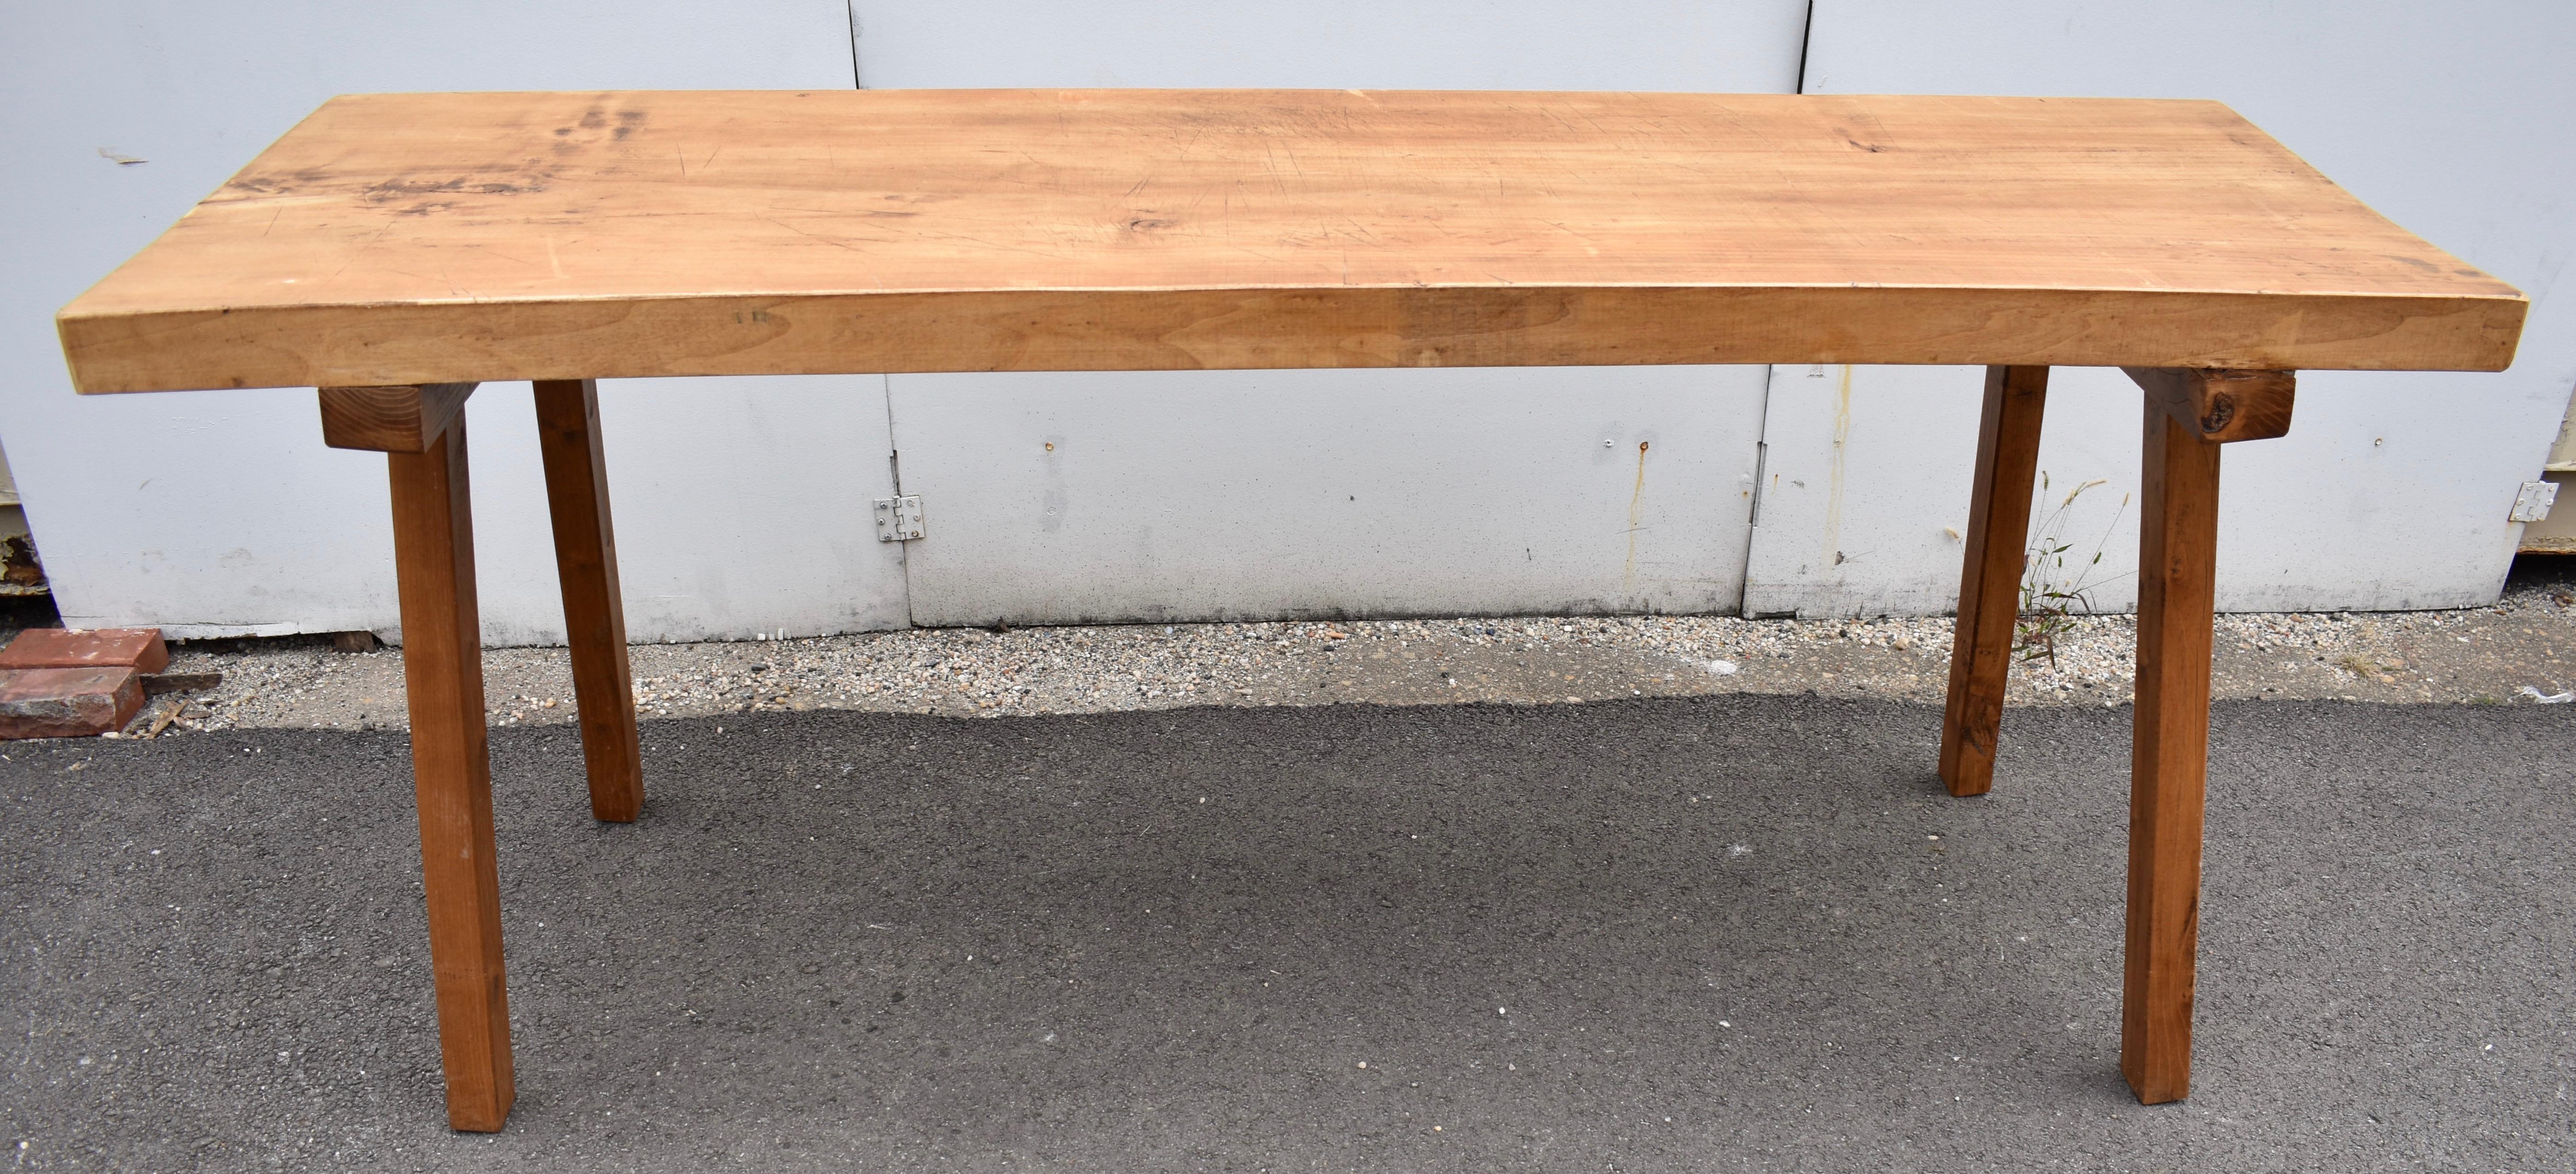 Die Platte dieses herausragenden Pig Bench Table ist eine einzige massive Platte aus Ulme drei Zoll dick und über sechseinhalb Fuß lang.  Die quadratischen Beine sind aus Eichenholz und werden in Eichenholzstollen gesteckt, die aus